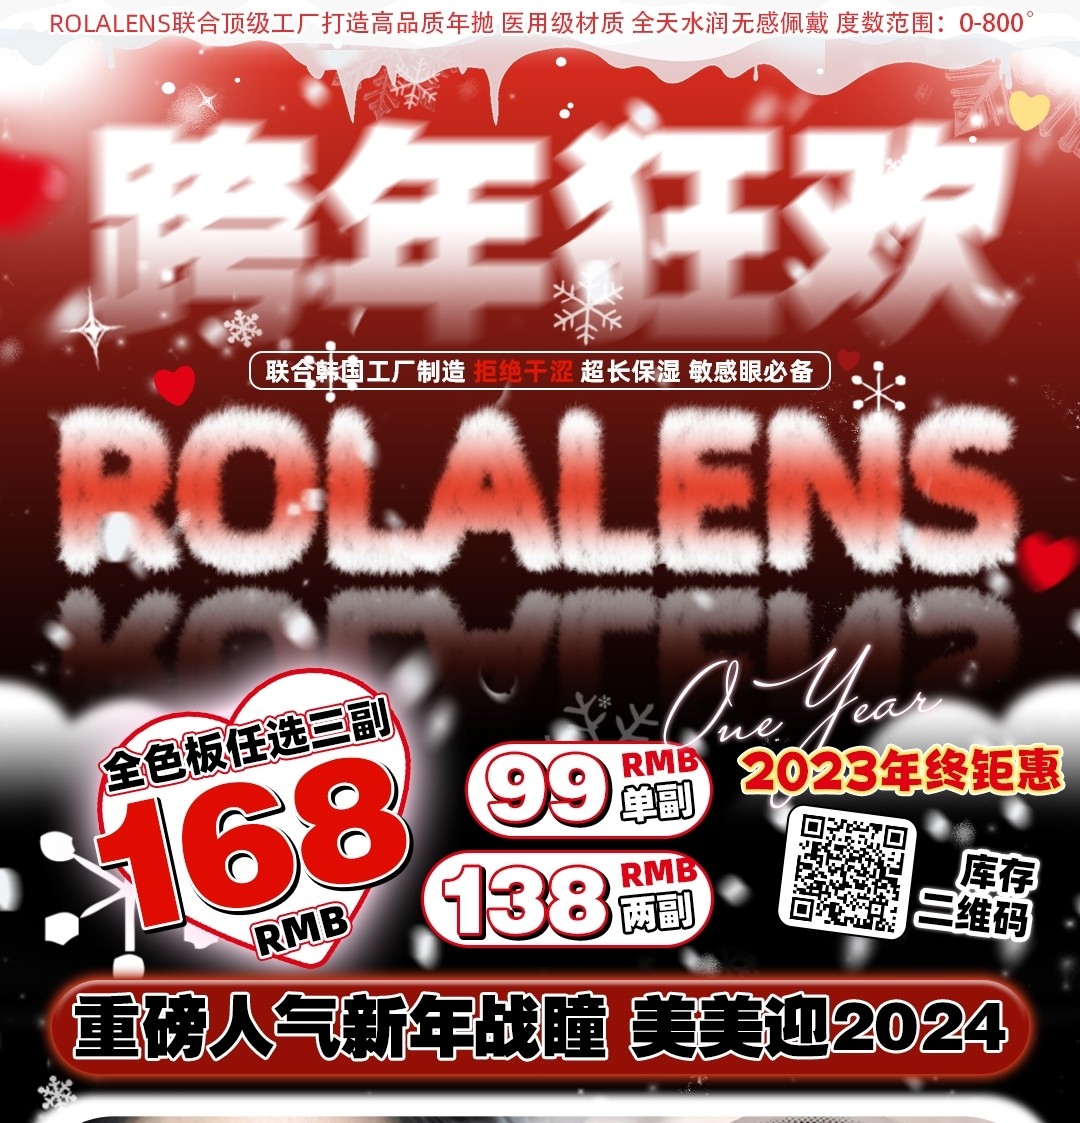 【年抛】Rolalens 诚意满满奉上 跨年狂欢 美美迎2024